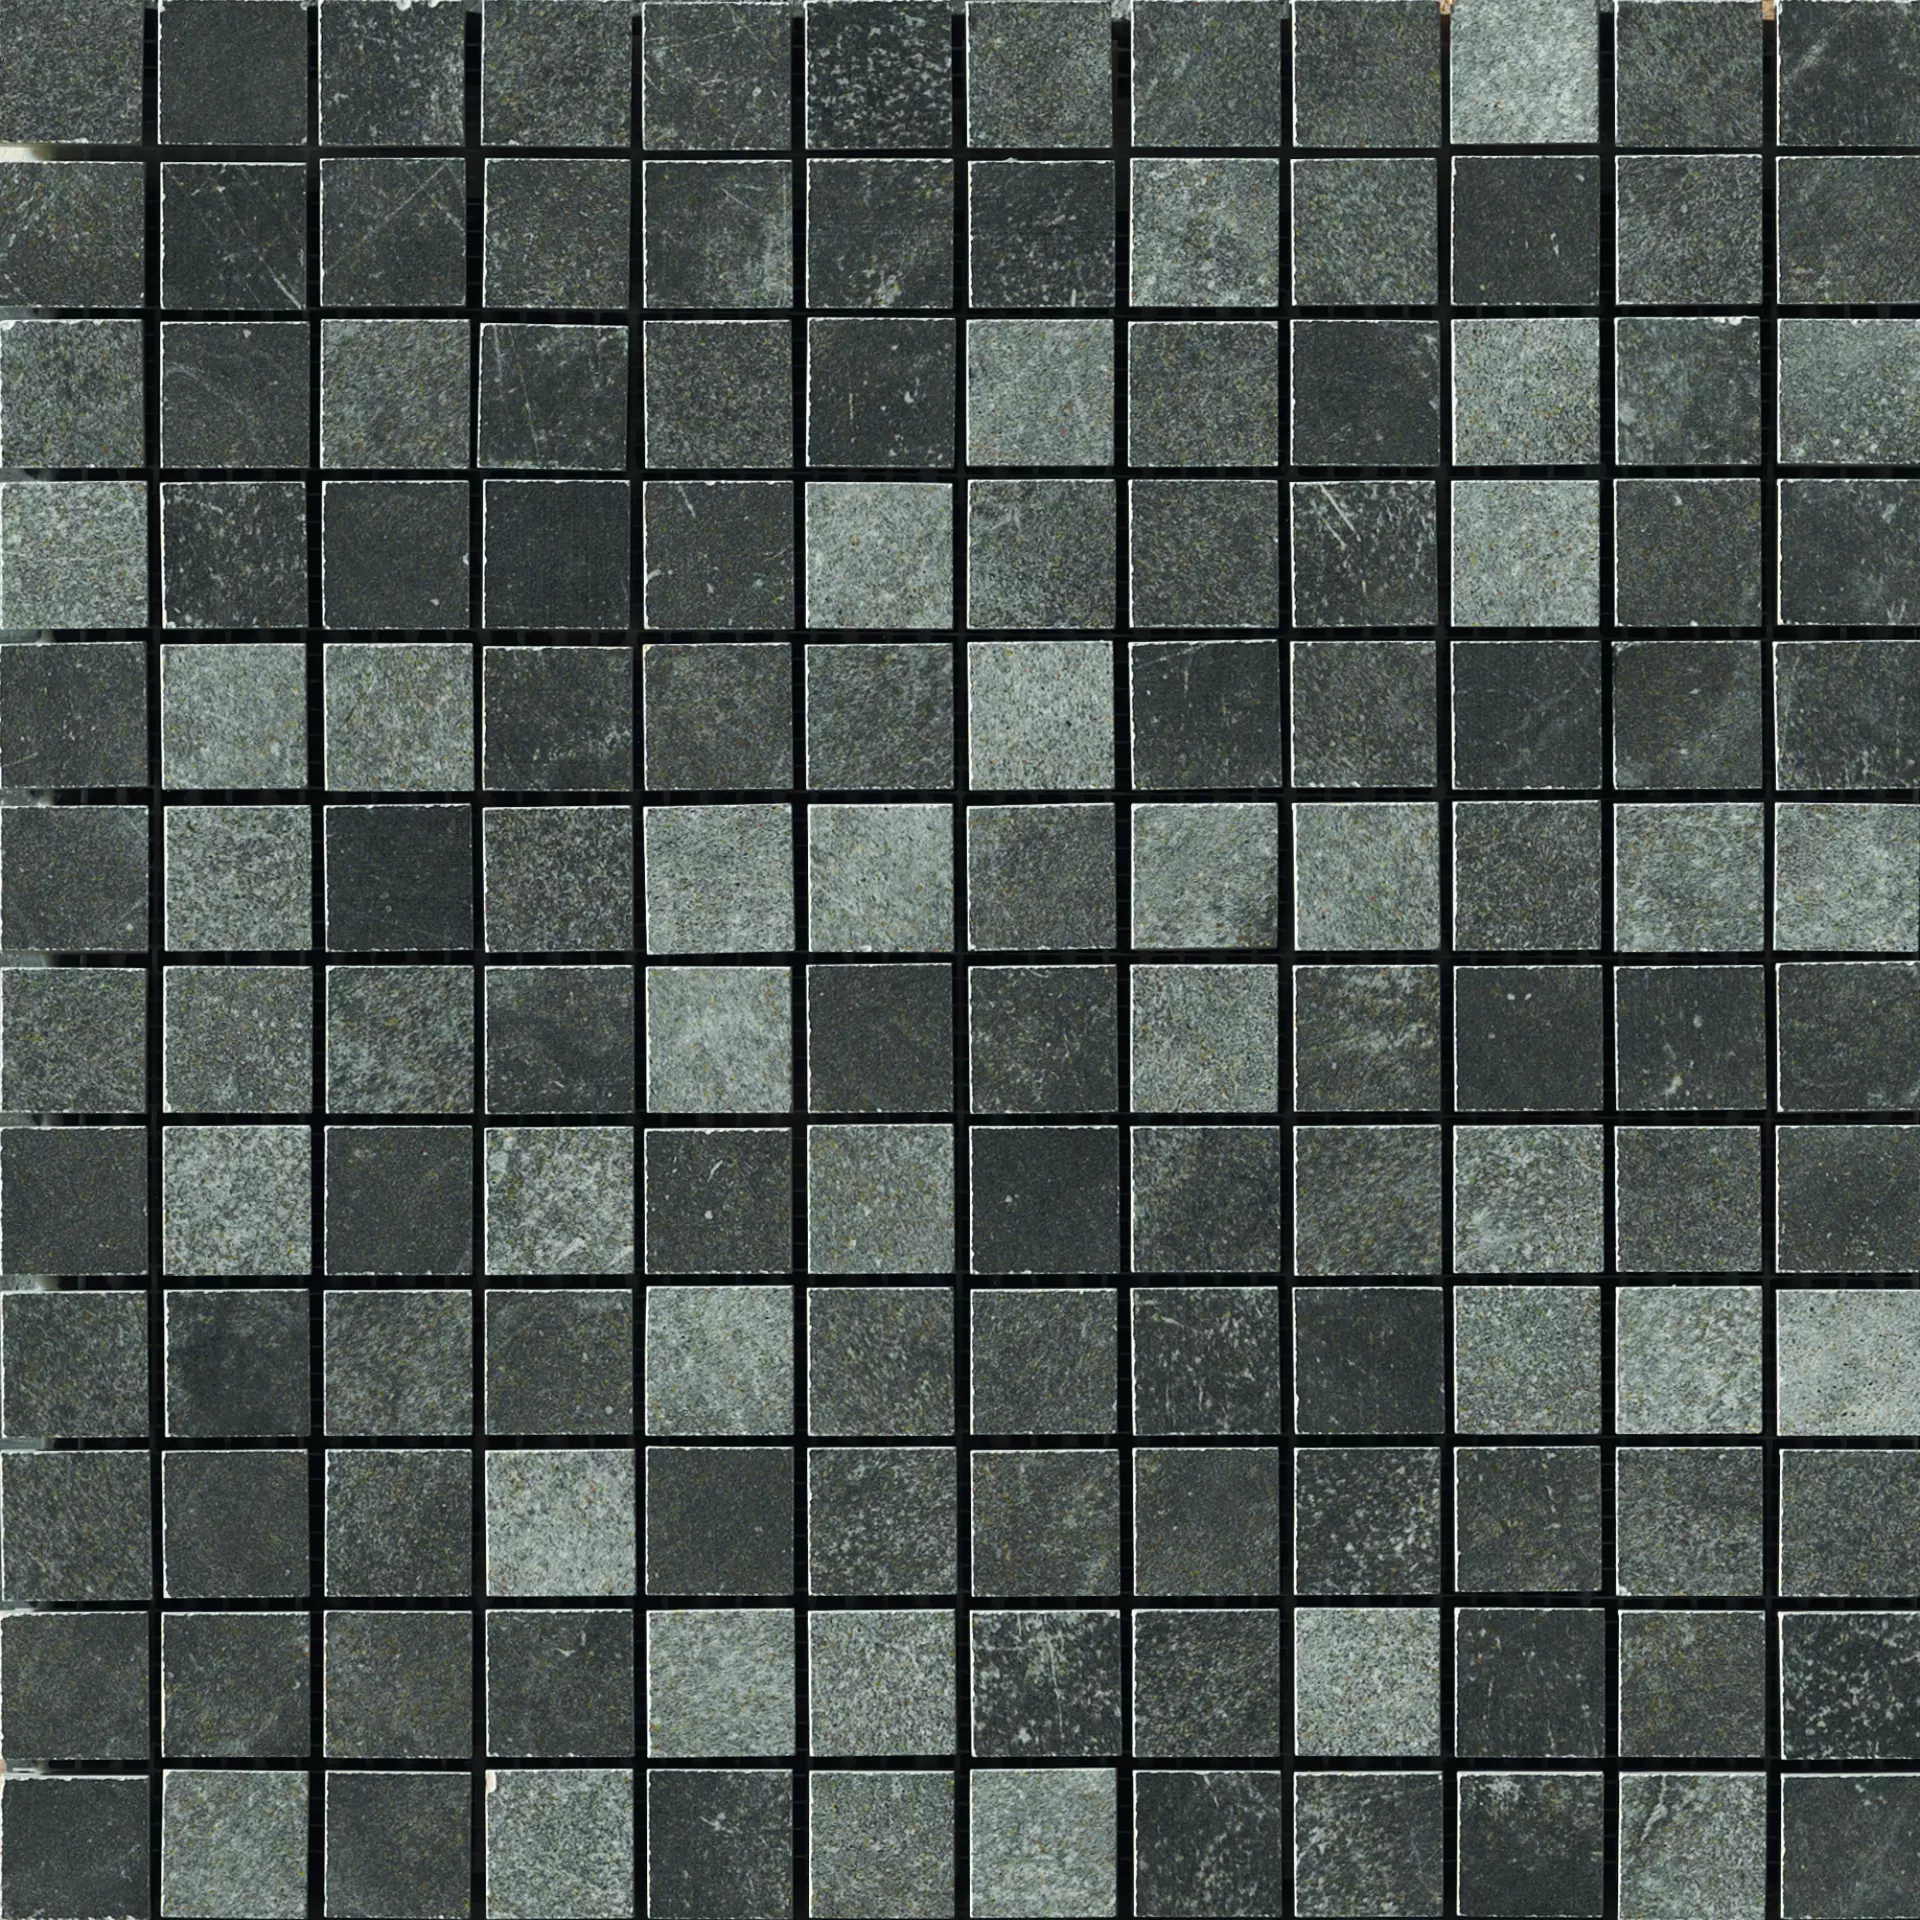 CIR Miami Pitch Black Naturale Mosaik 1064130 30x30cm